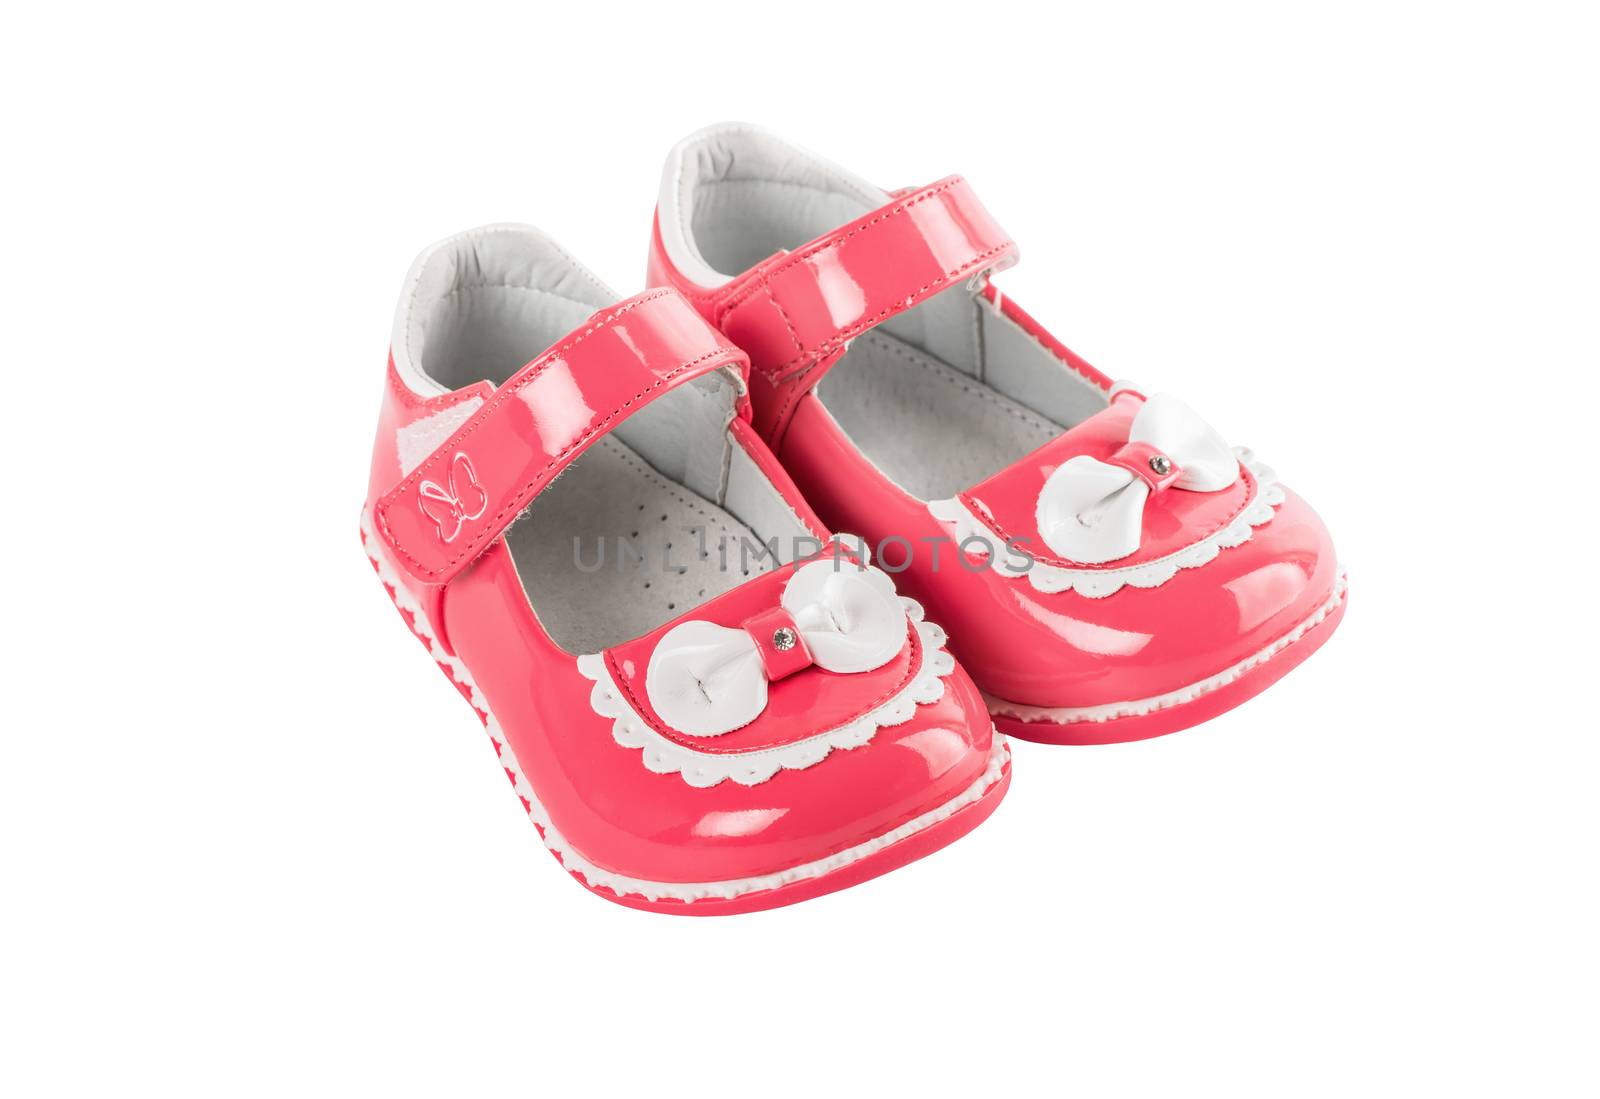 Toddler sandals by iprachenko